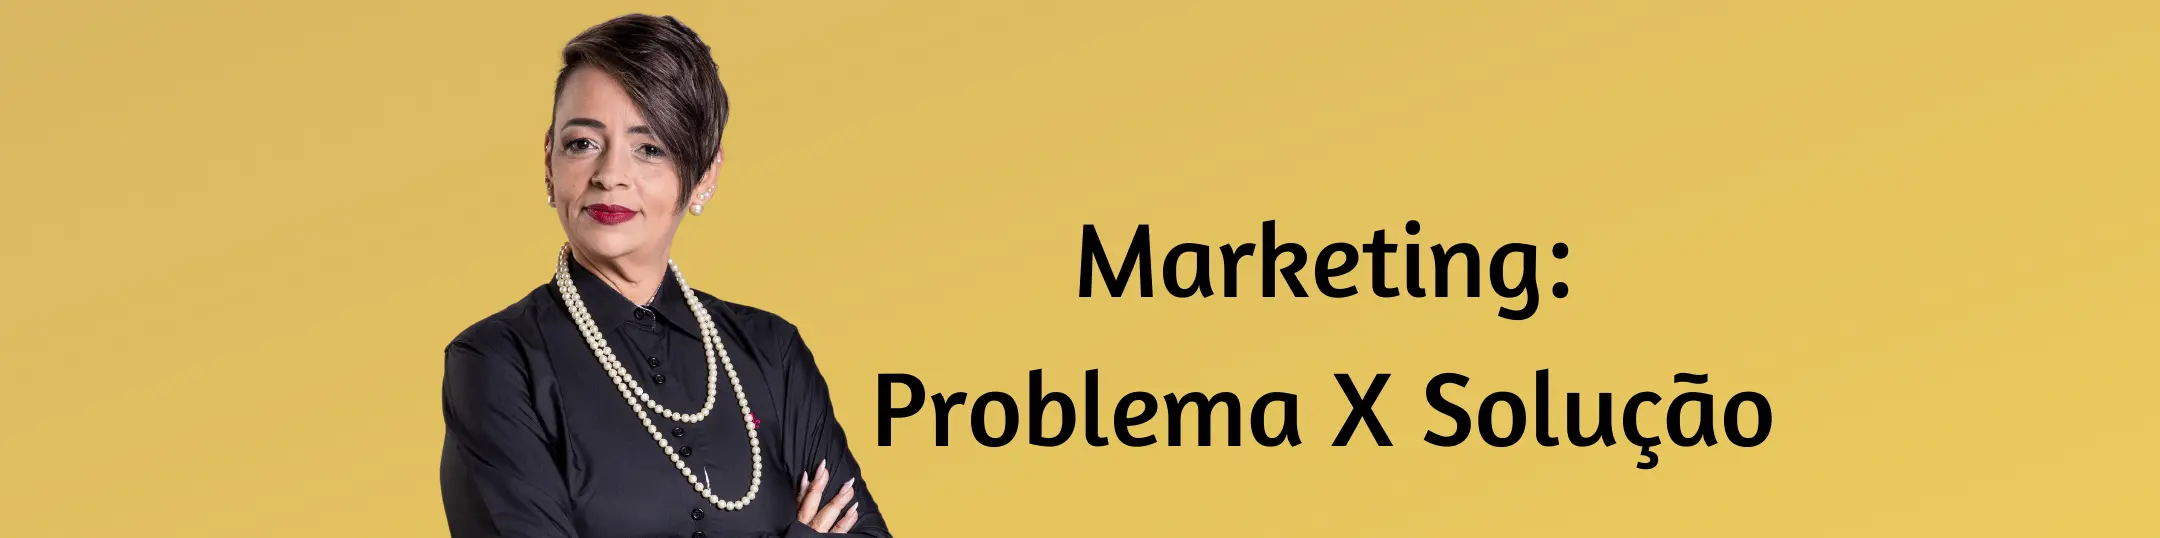 Marketing: Problema X Solução